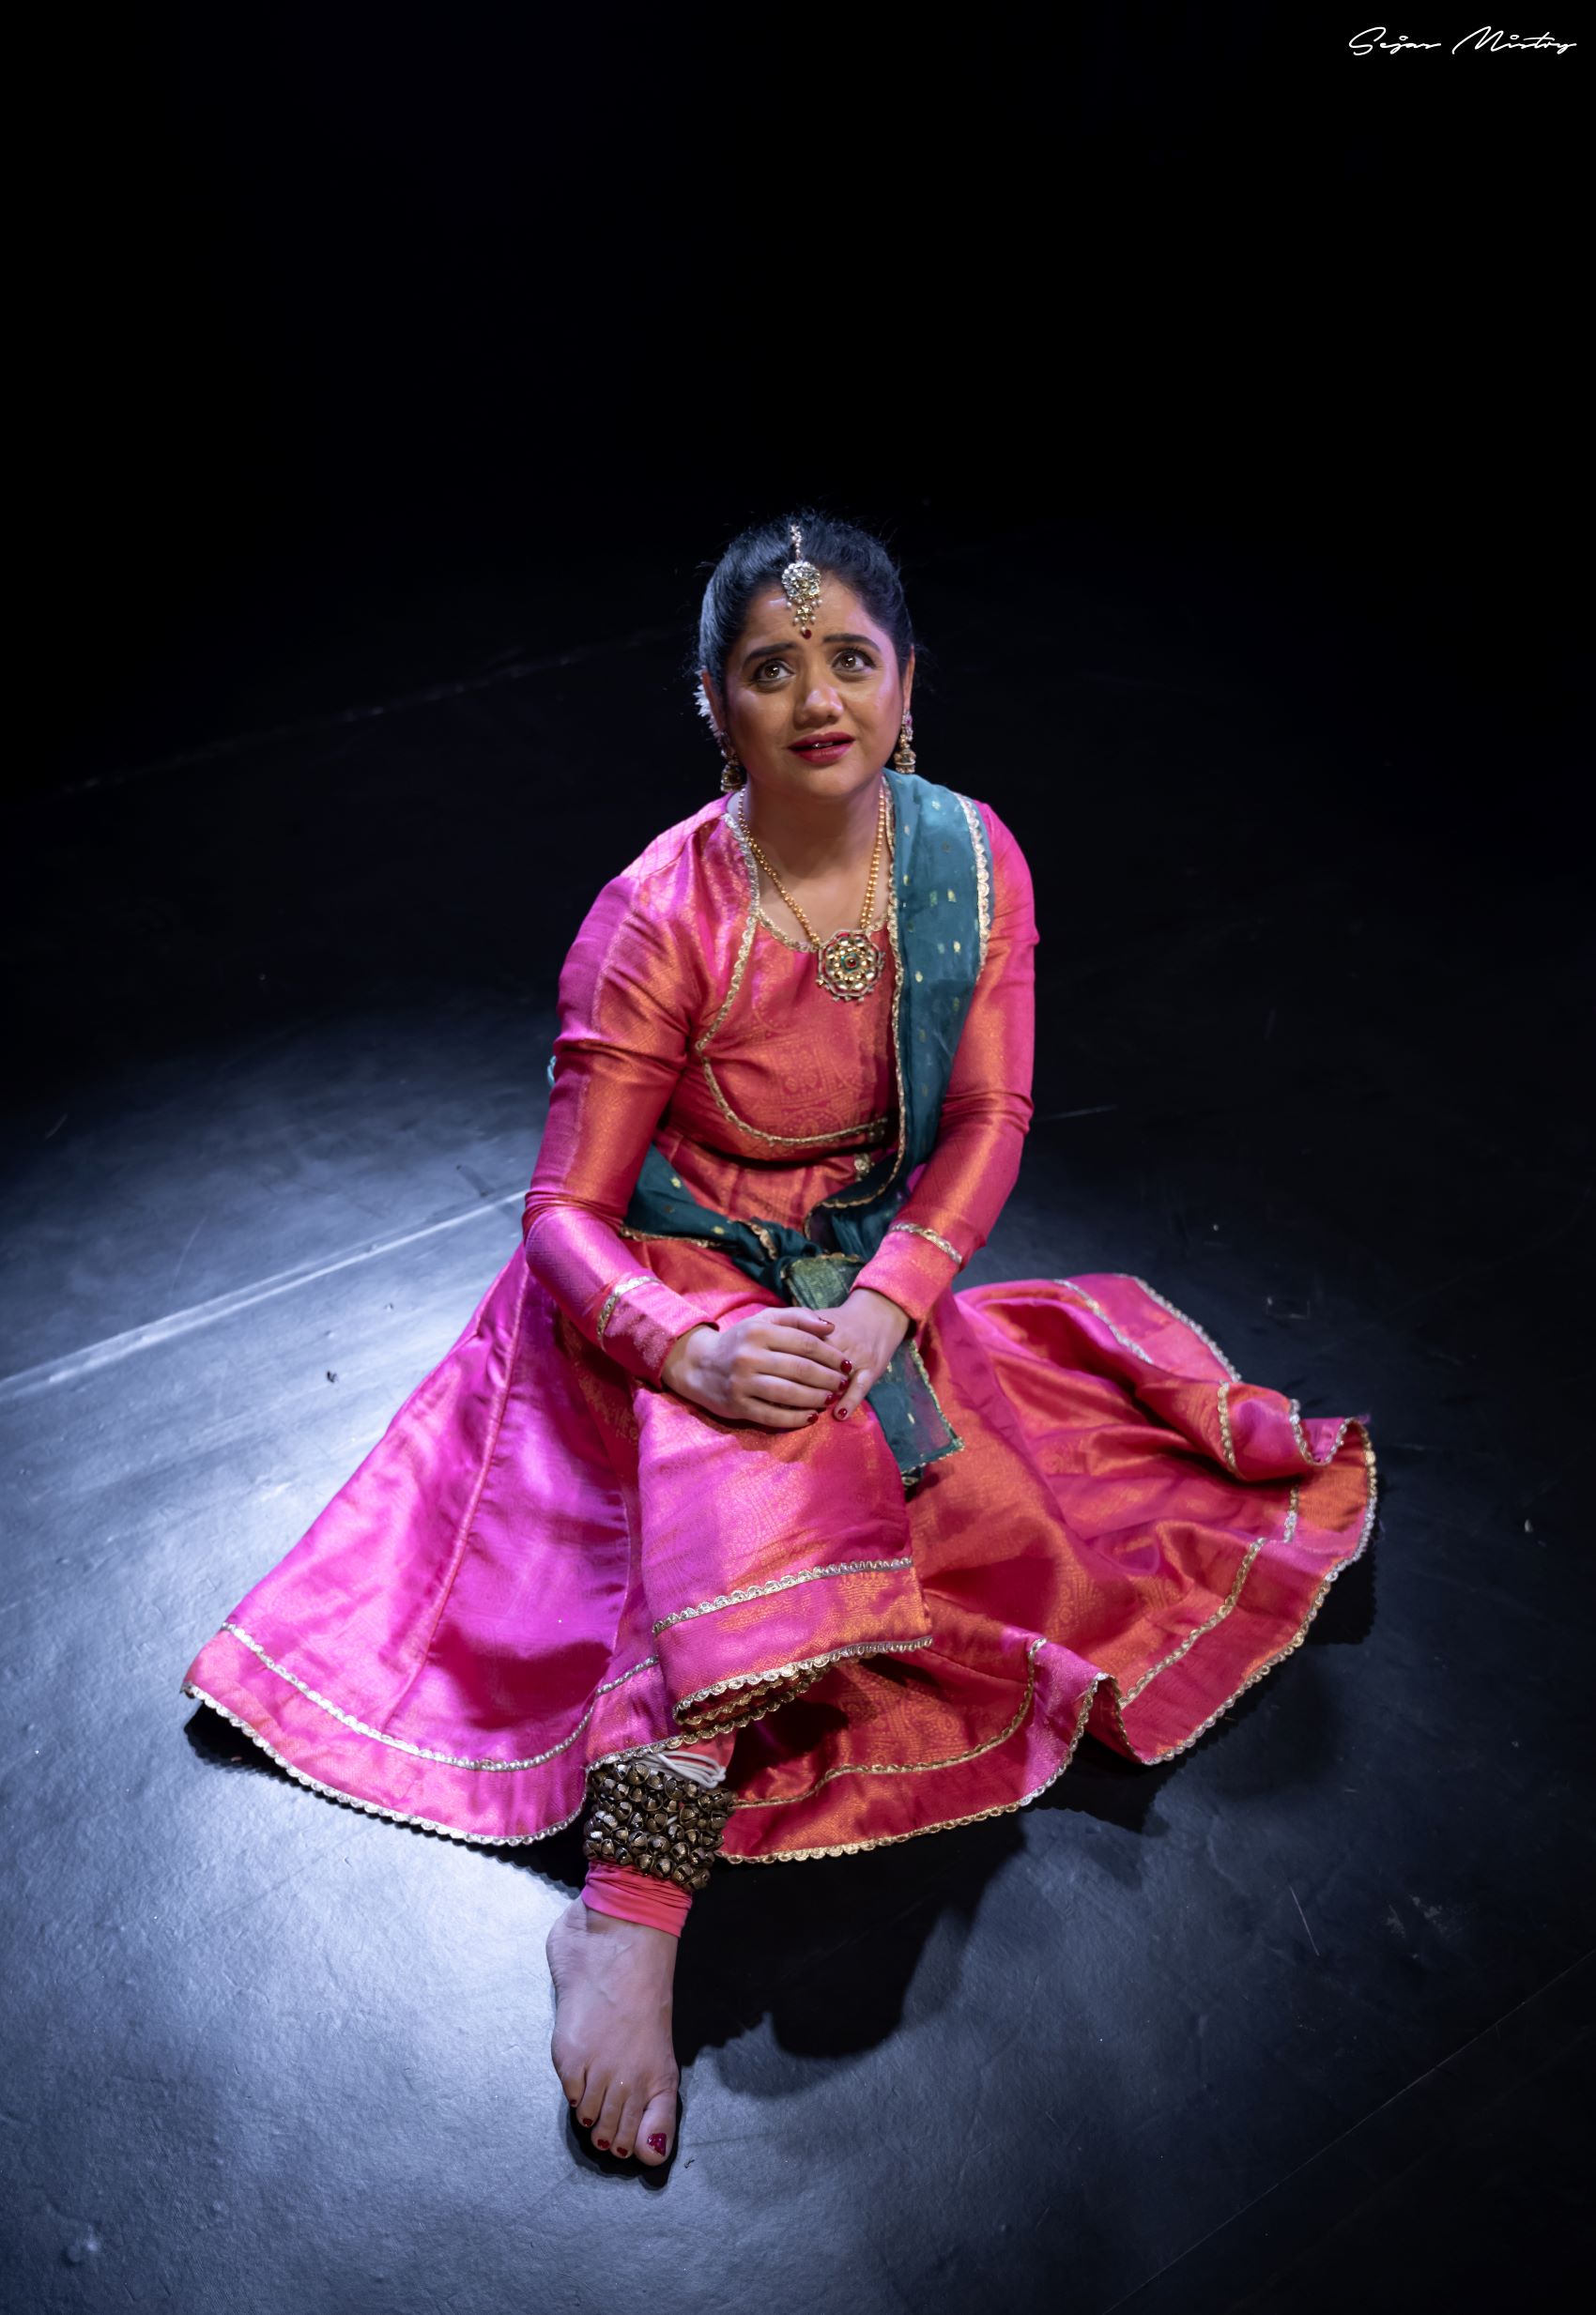 Malisetti joyita classical dance Bharatanatyam pictures | Dance photography  poses, Bharatanatyam poses, Dance photography